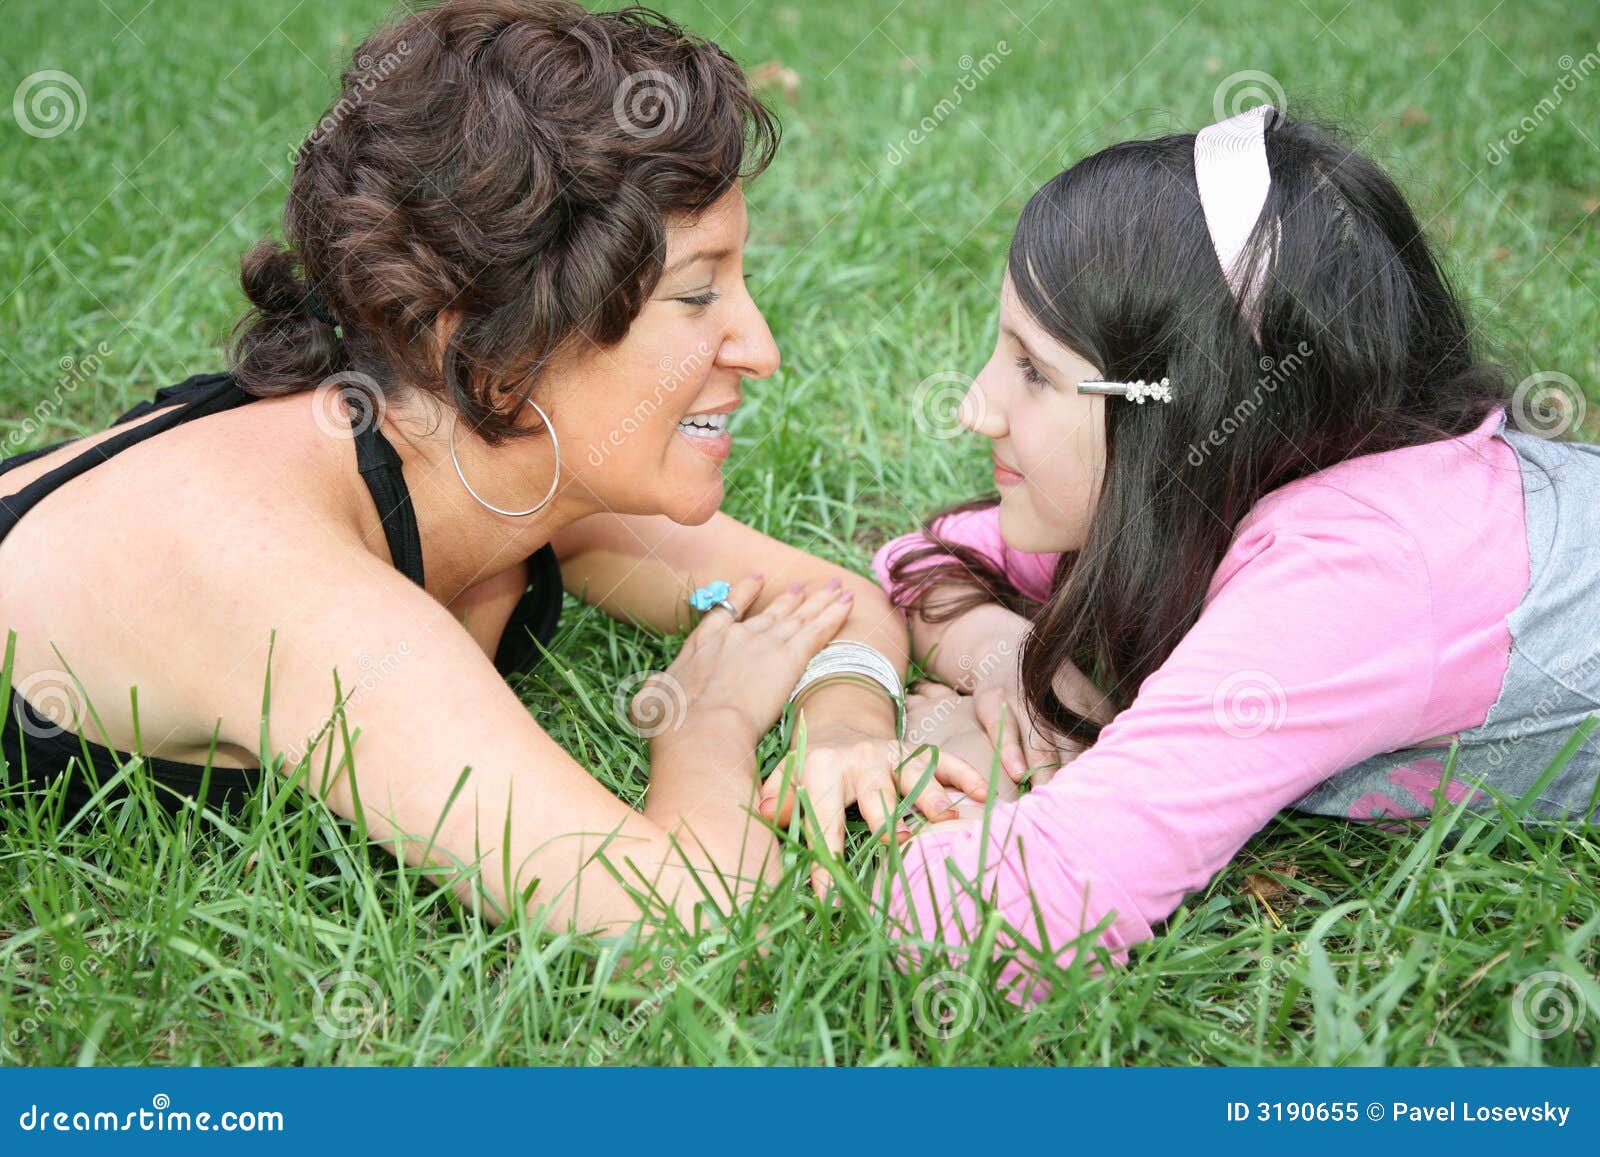 Мама лесбиянка заставляет. Мать и дочь на траве. Дочка лежит на маме. Мама и дочка лесбиянство. Фотосессия мама и дочь лизбиянка.